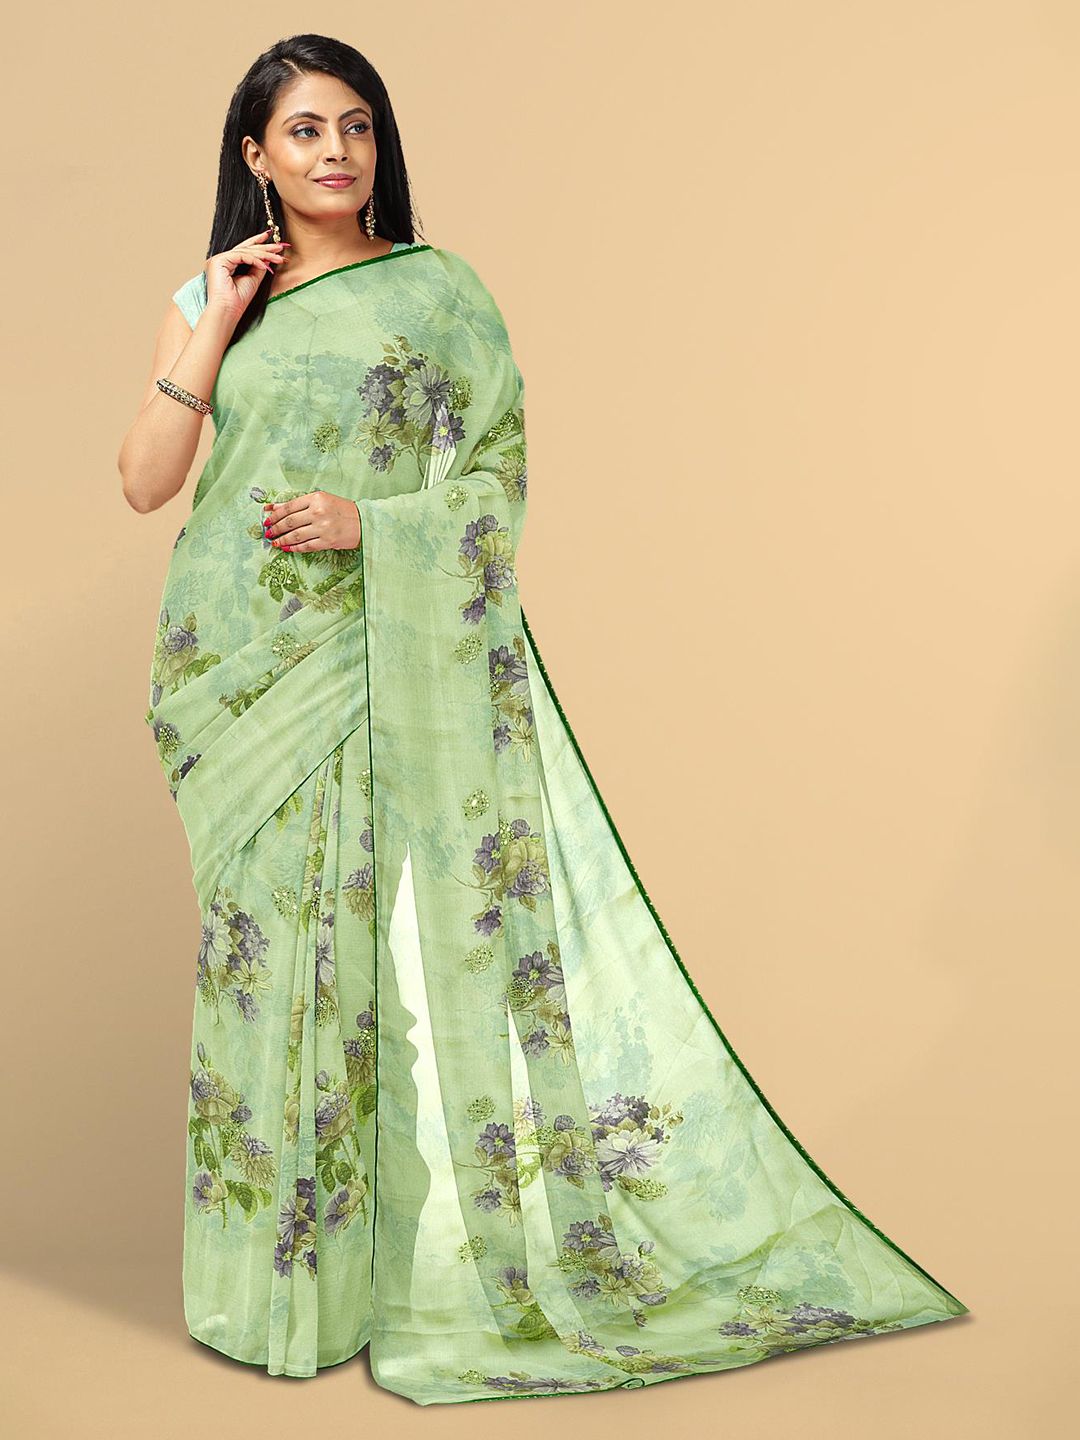 Kalamandir Green Floral Silk Blend Saree Price in India